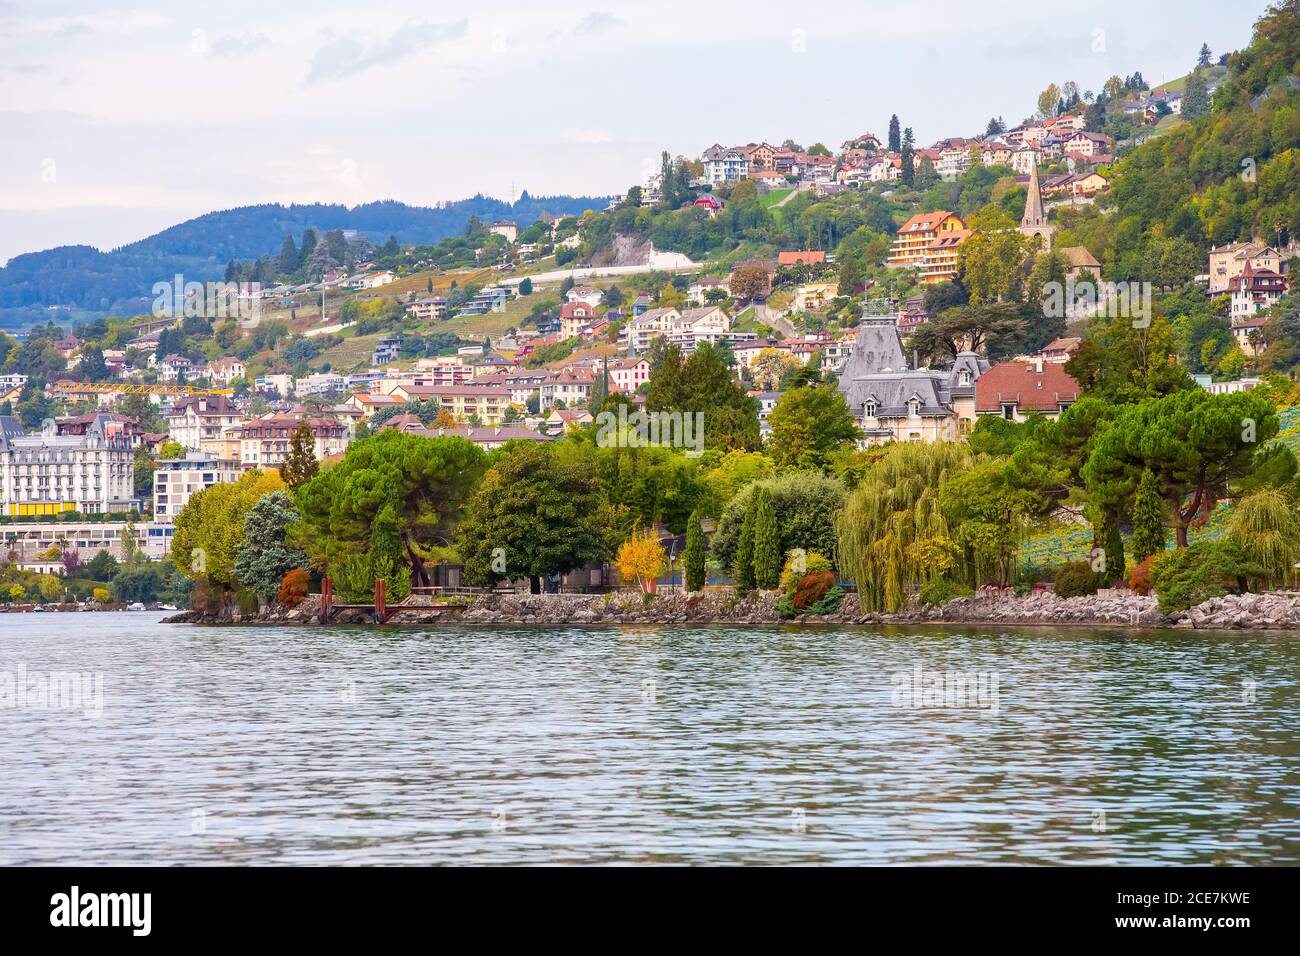 Montreux and Lake Geneva, Switzerland Stock Photo